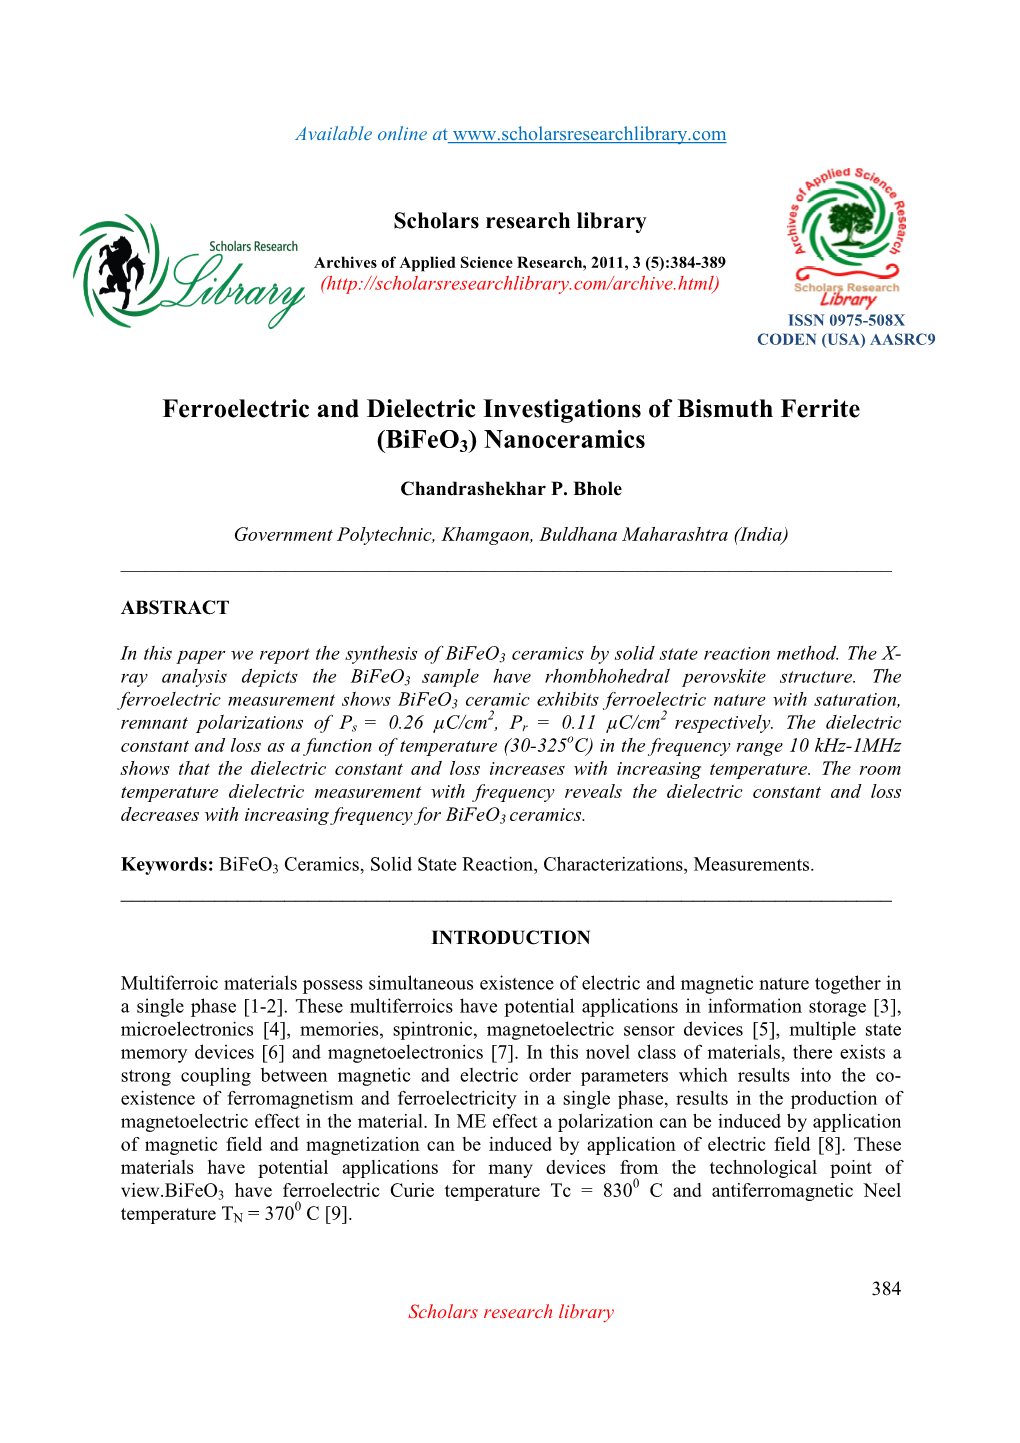 Ferroelectric and Dielectric Investigations of Bismuth Ferrite (Bifeo 3) Nanoceramics